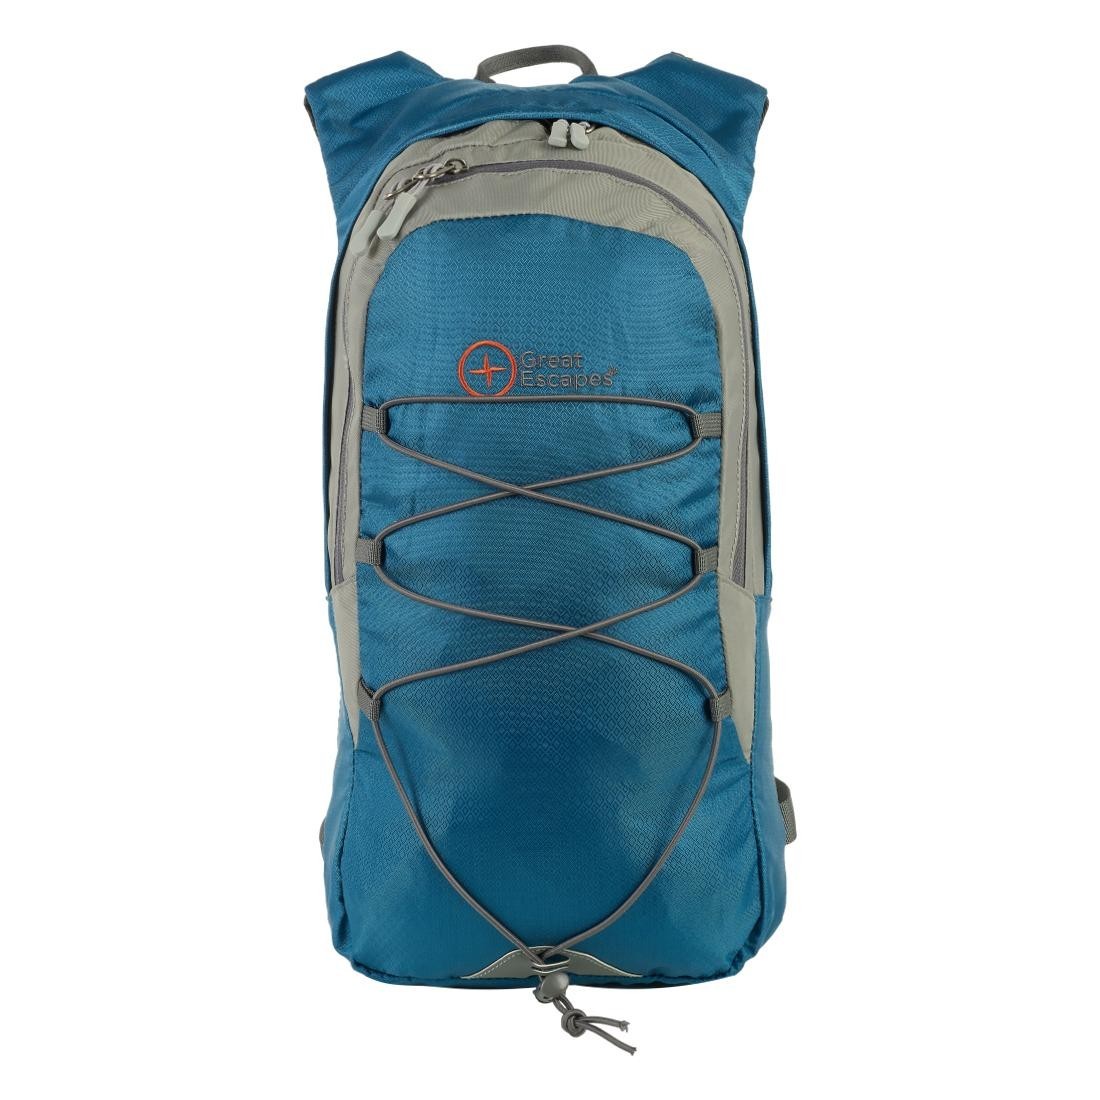 Multipurpose backpack - T. LIGHT 8